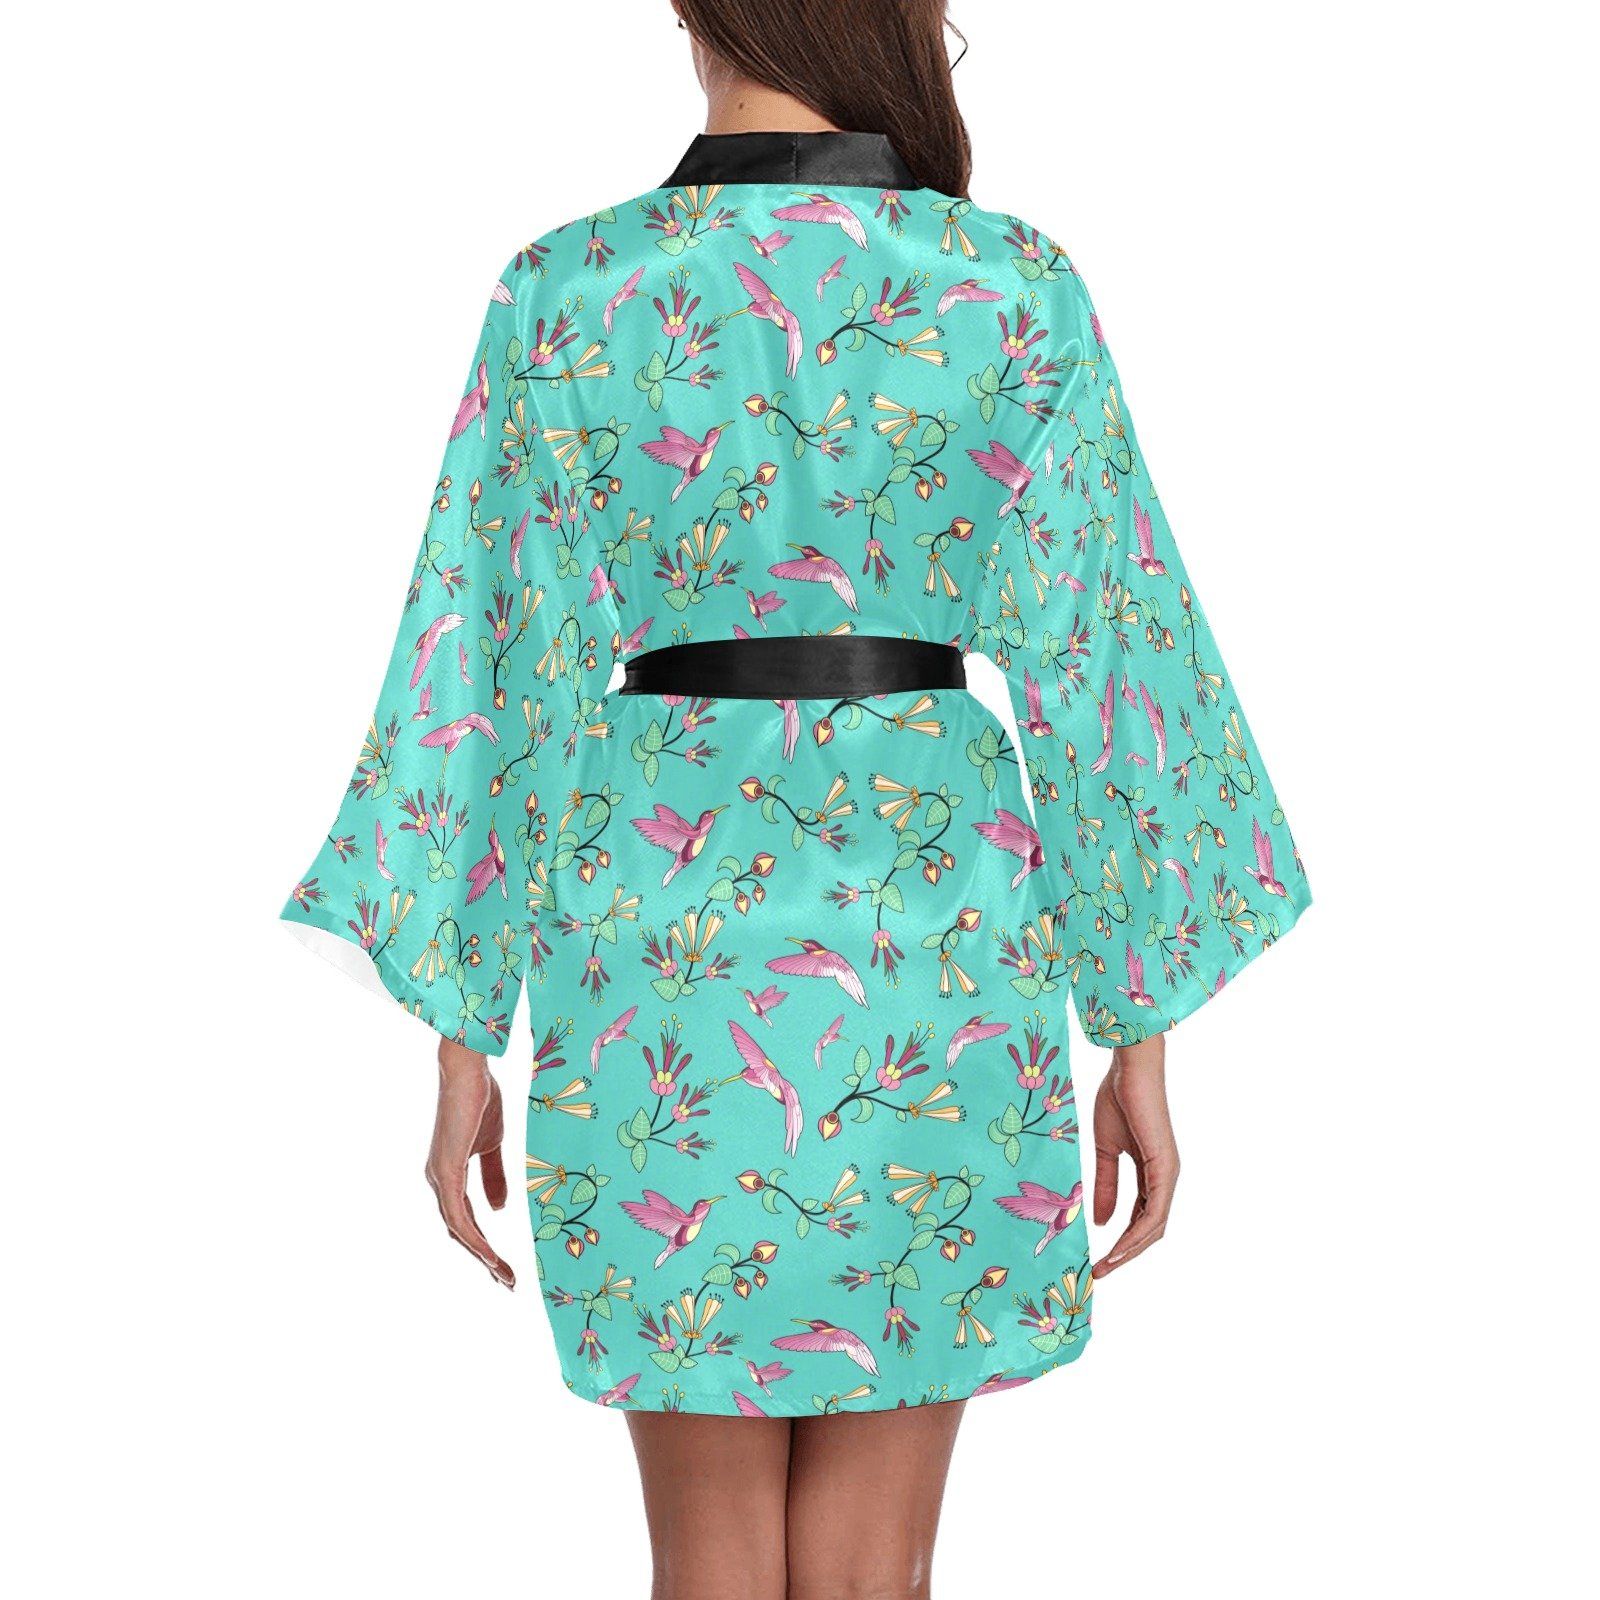 Swift Pastel Long Sleeve Kimono Robe Long Sleeve Kimono Robe e-joyer 